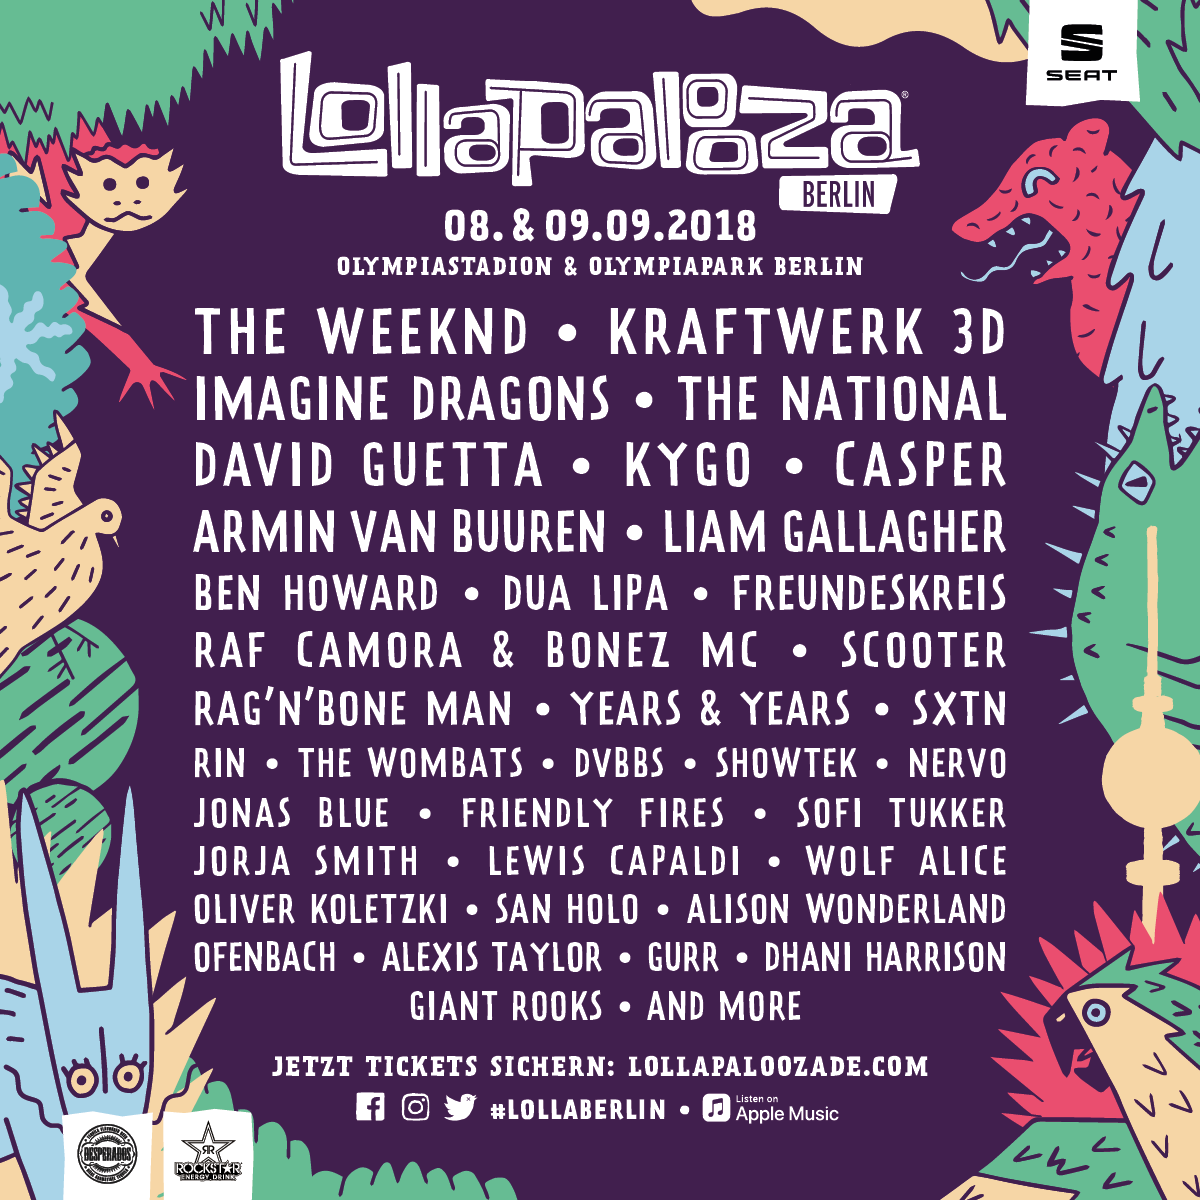 Lollapalooza Berlin full line-up